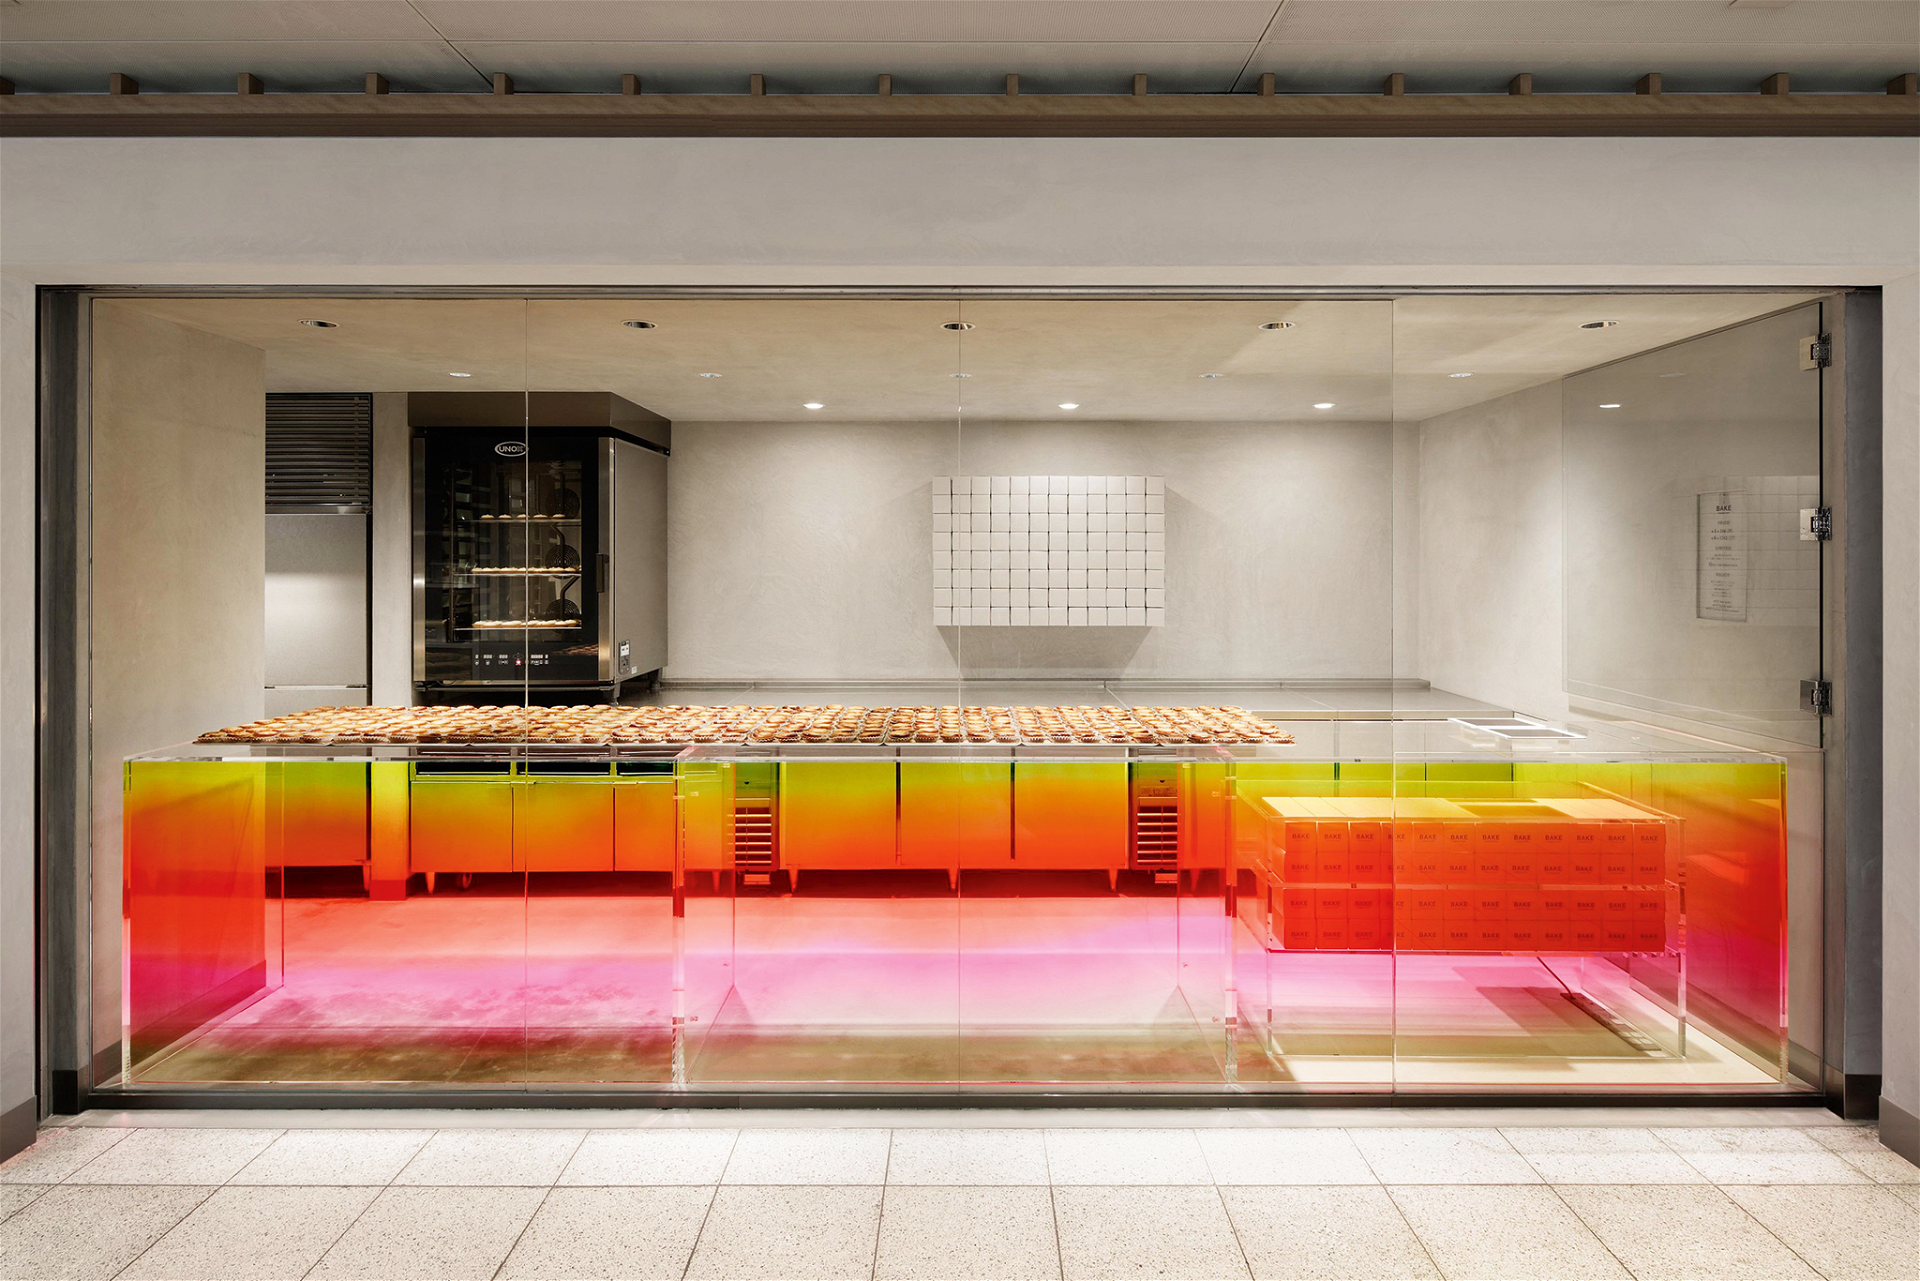 Bake Kitasenju, Tokio In dieser Filiale gestaltete der japanische Designer Yota Kakuda die zentrale Theke aus Acrylglas in strahlendem Pink, Gelb und Orange und setzte graue Aluminumfliesen in den Innenbereich. cheesetart.com